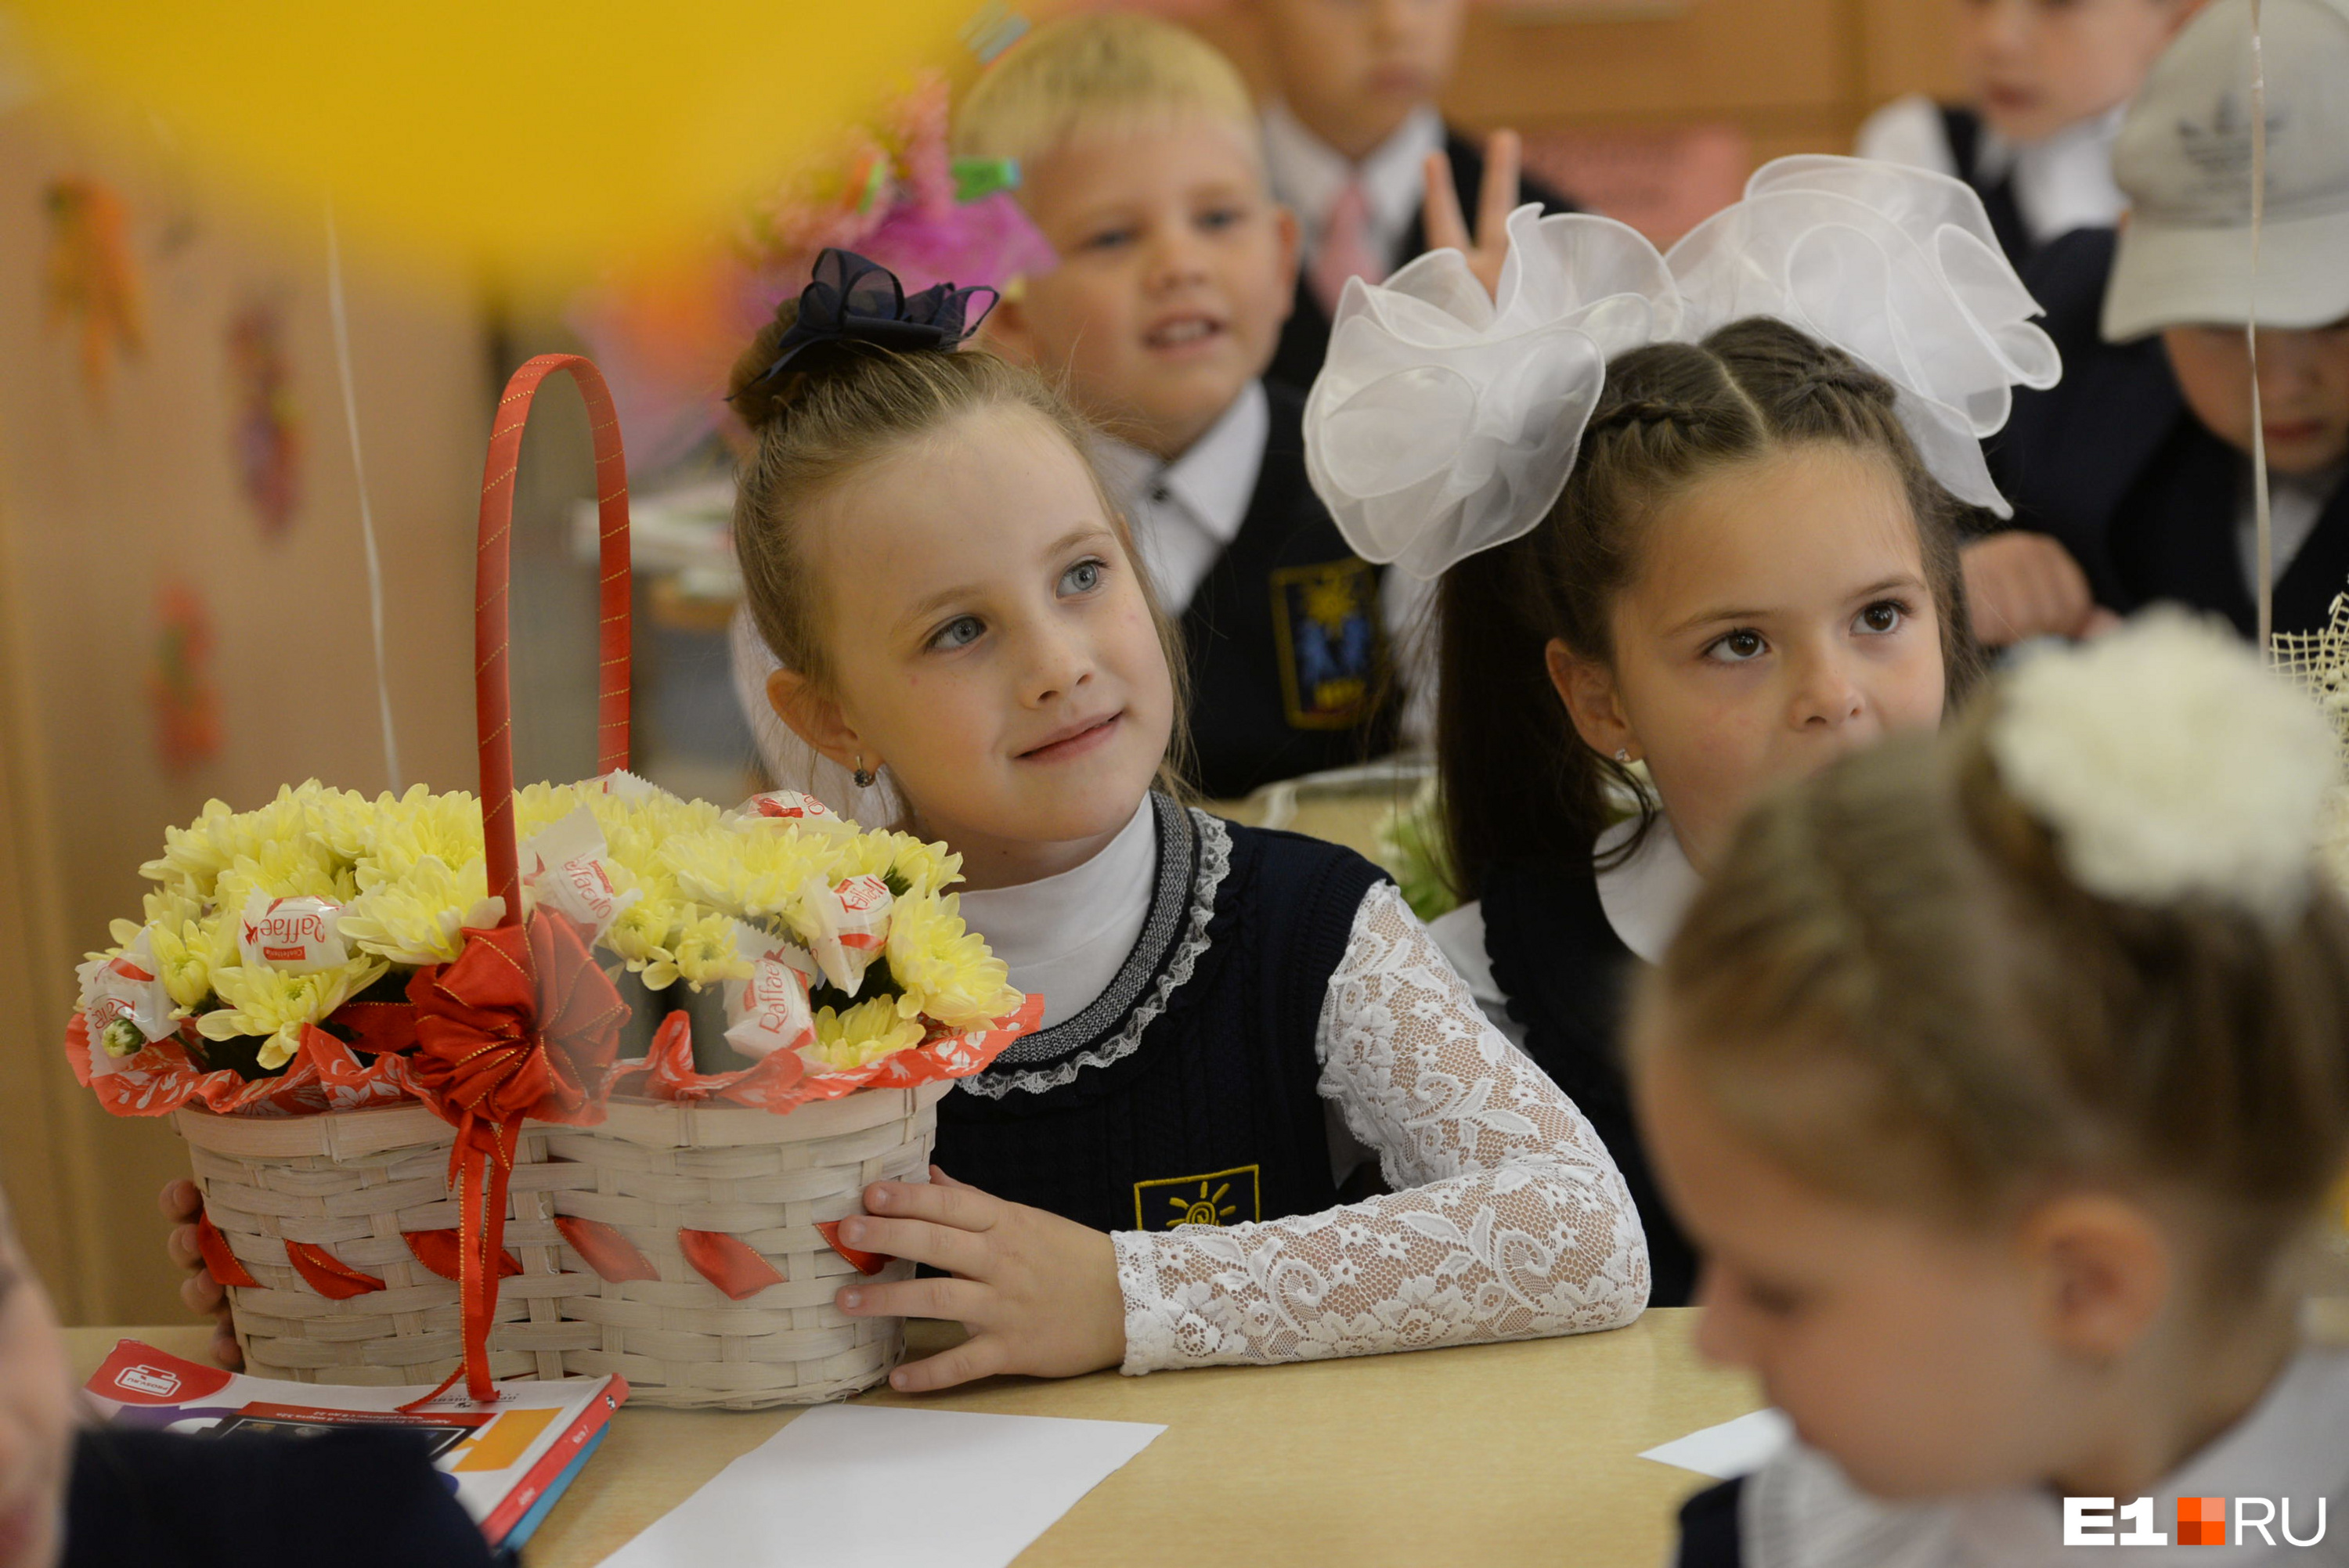 В некоторых школах родителям порекомендовали приносить цветы в корзиночках, а не букетами